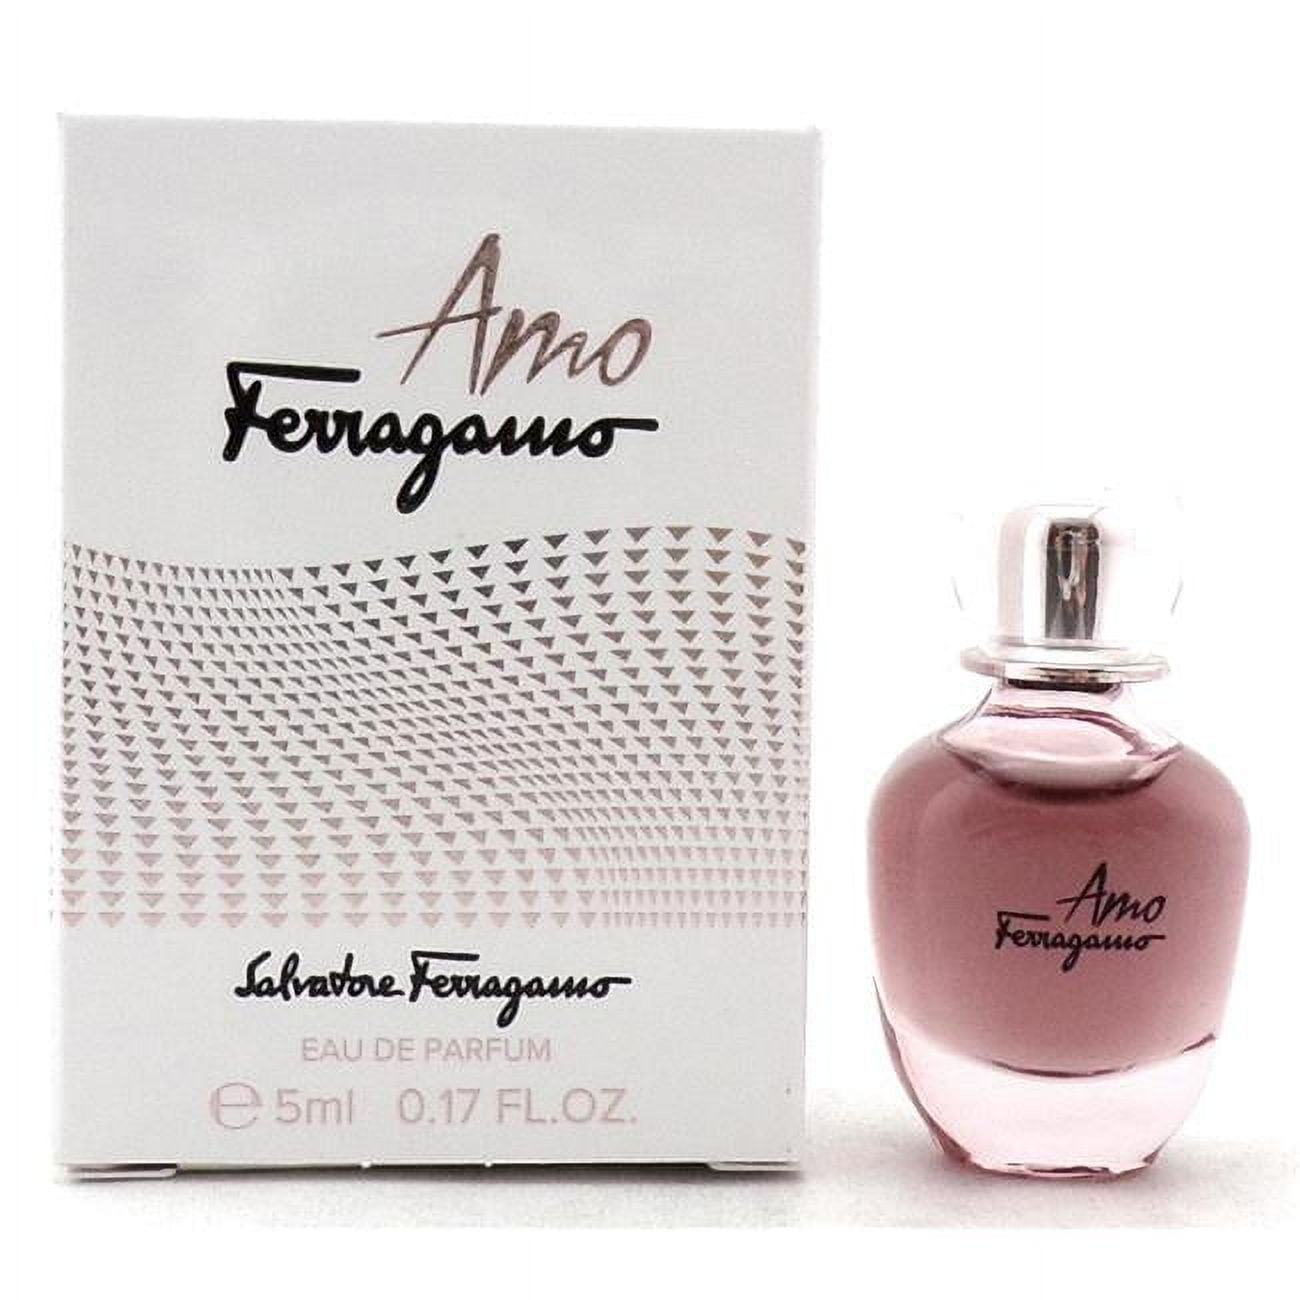 Ferragamo EDP Salvatore 0.17 / oz ml Perfume Women AMO 5 Splash * Miniature